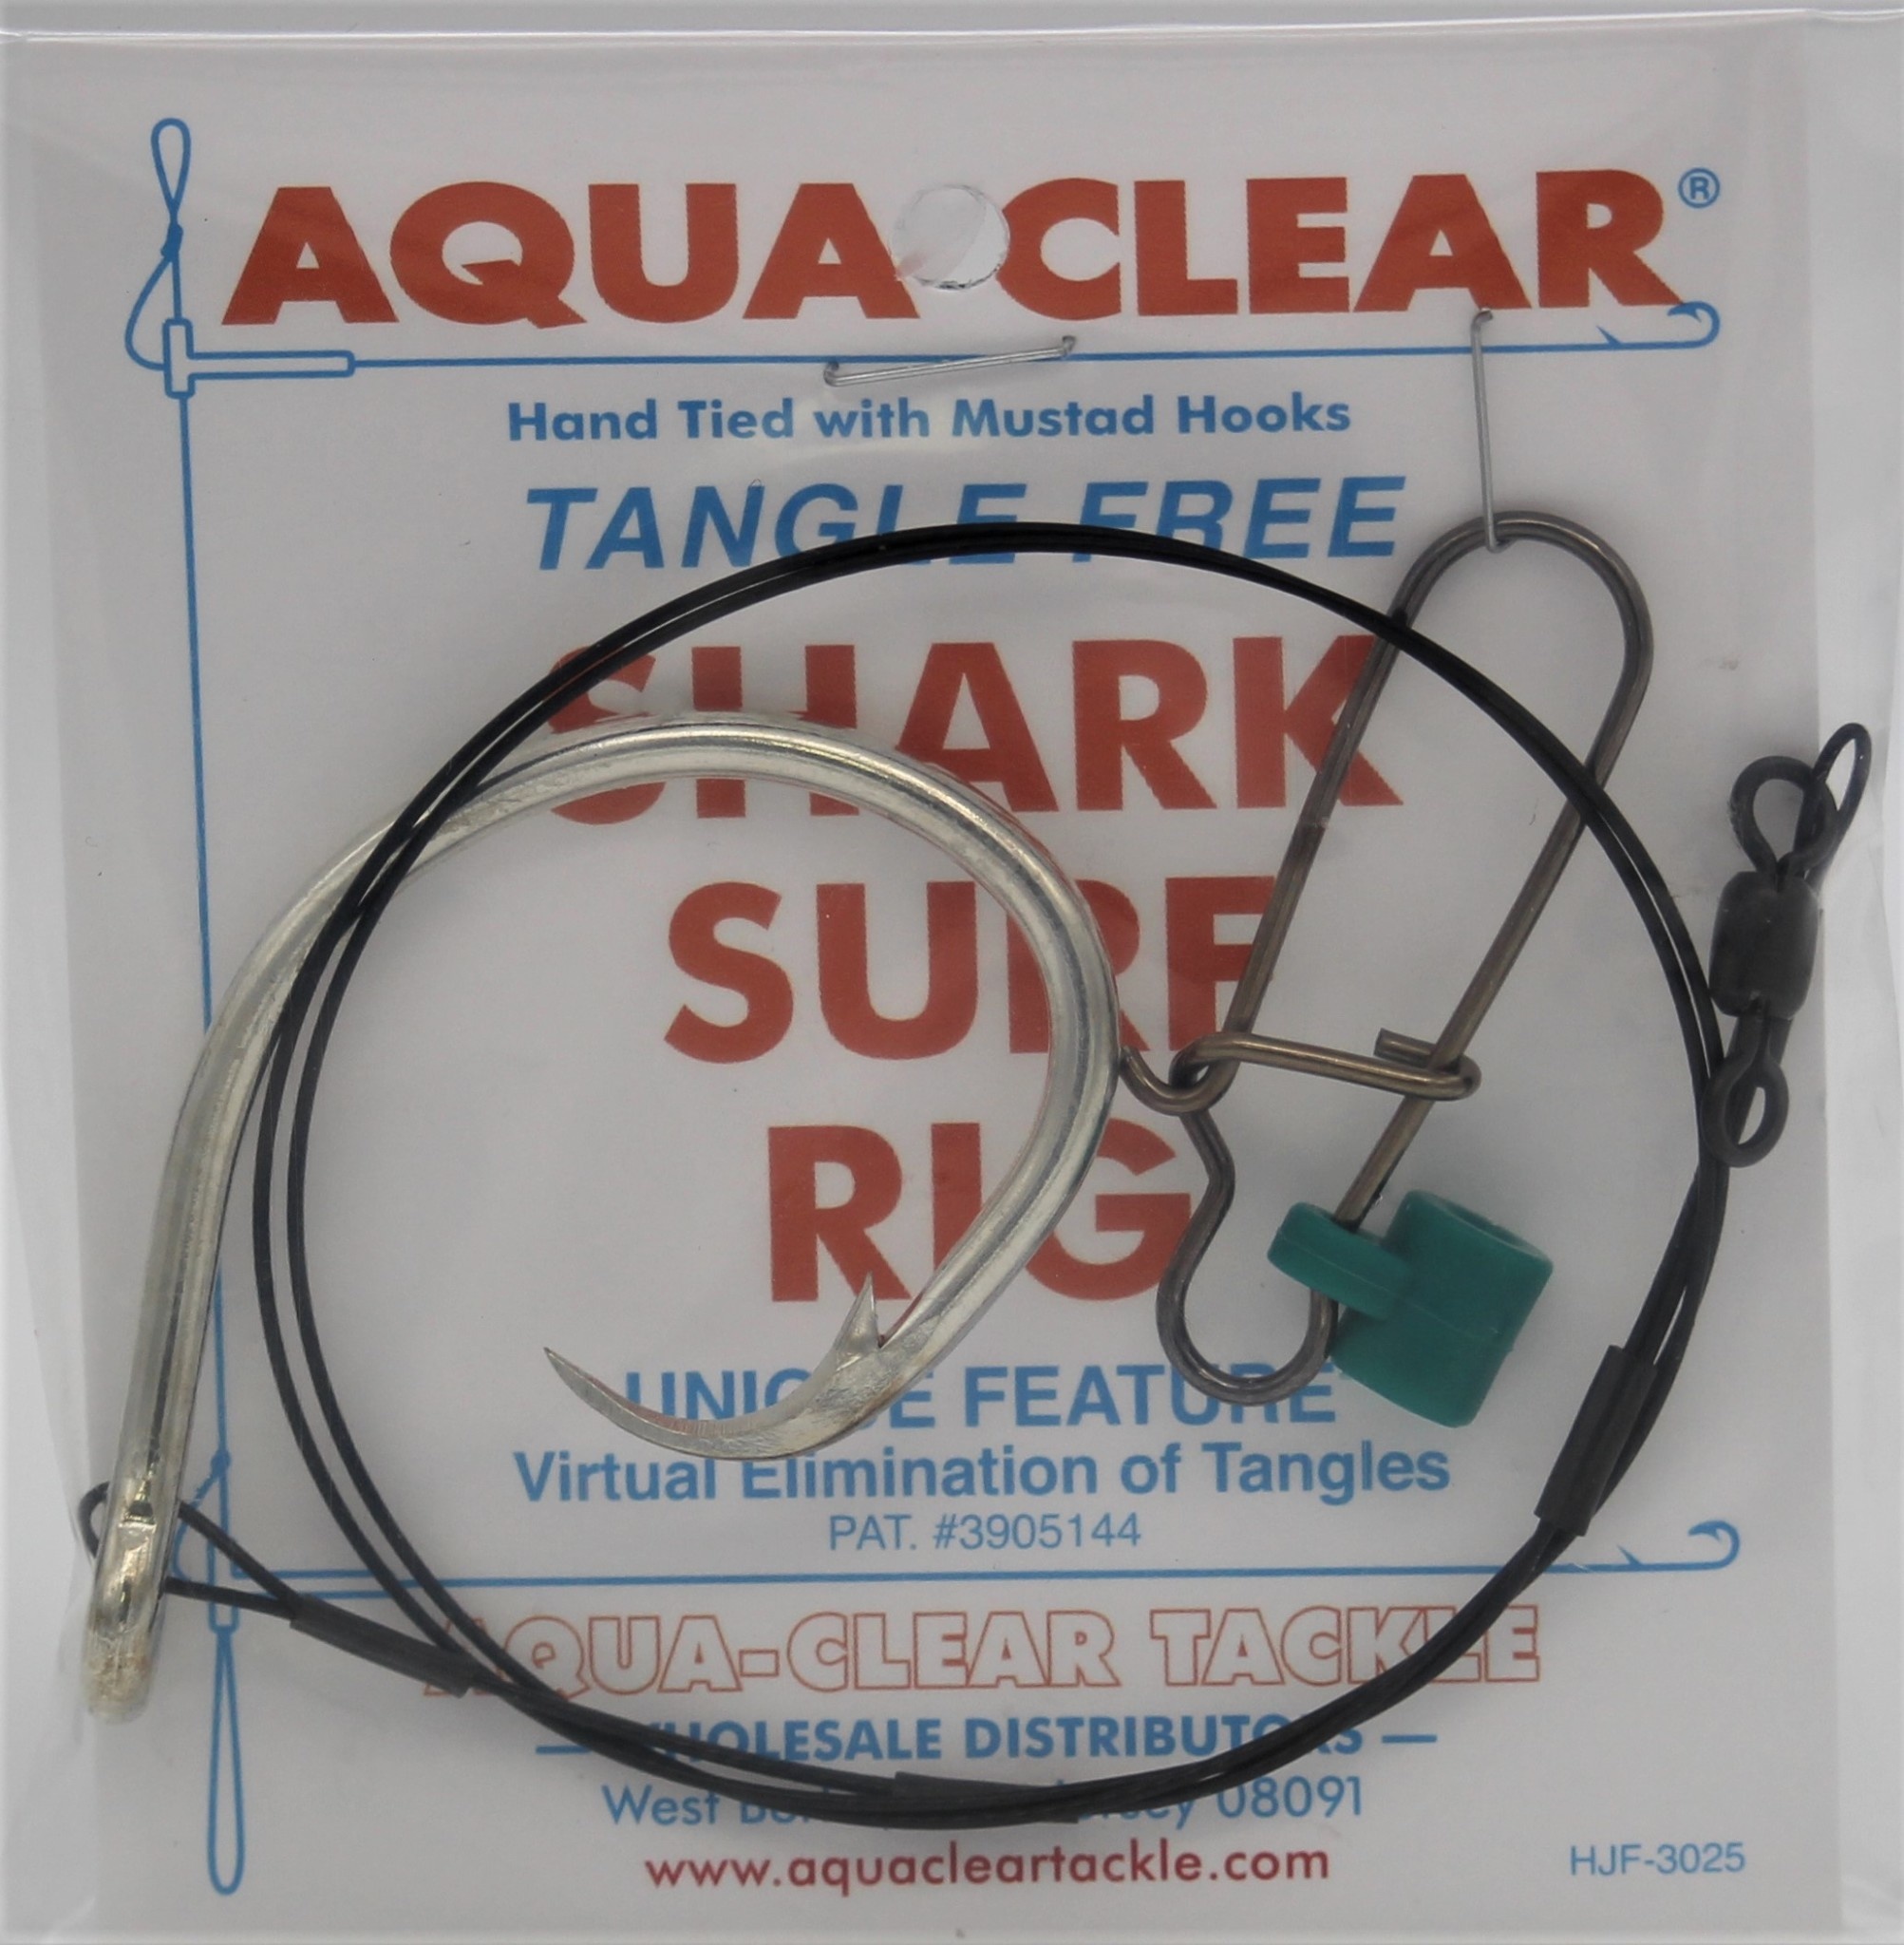 Aqua Clear Aqua-Clear Shark Circle Hook Surf Rigs w/90lb Wire & Fish Finder